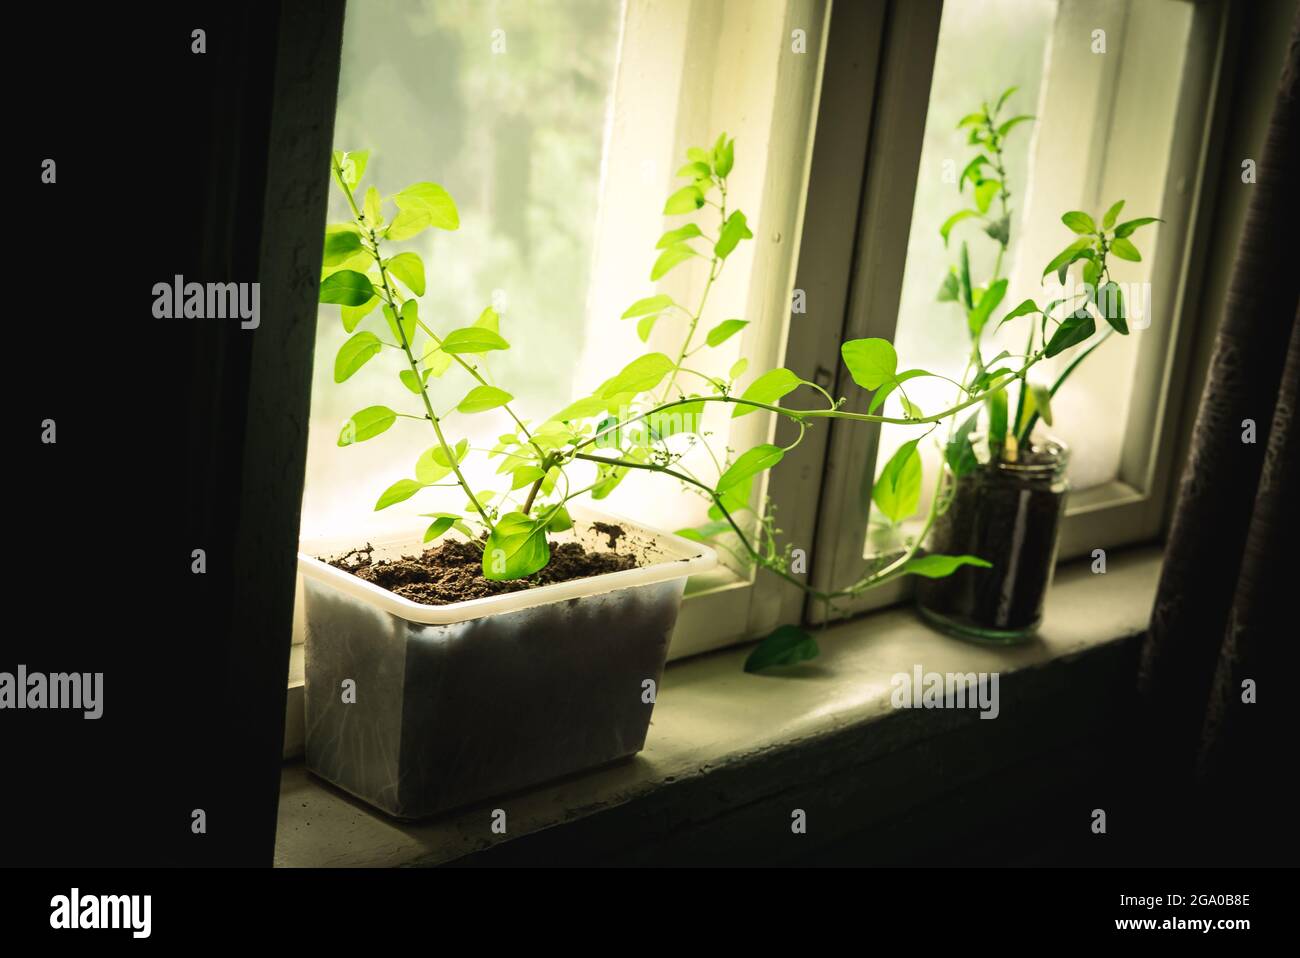 Zwei Pflanzen mit grünen Blättern, die aus biologischem Boden in verschiedenen wiederverwendeten Boho-Hipster-Blumentöpfen in einer gemütlichen rustikalen Fensterbank mit Frühlingssonne wachsen Stockfoto